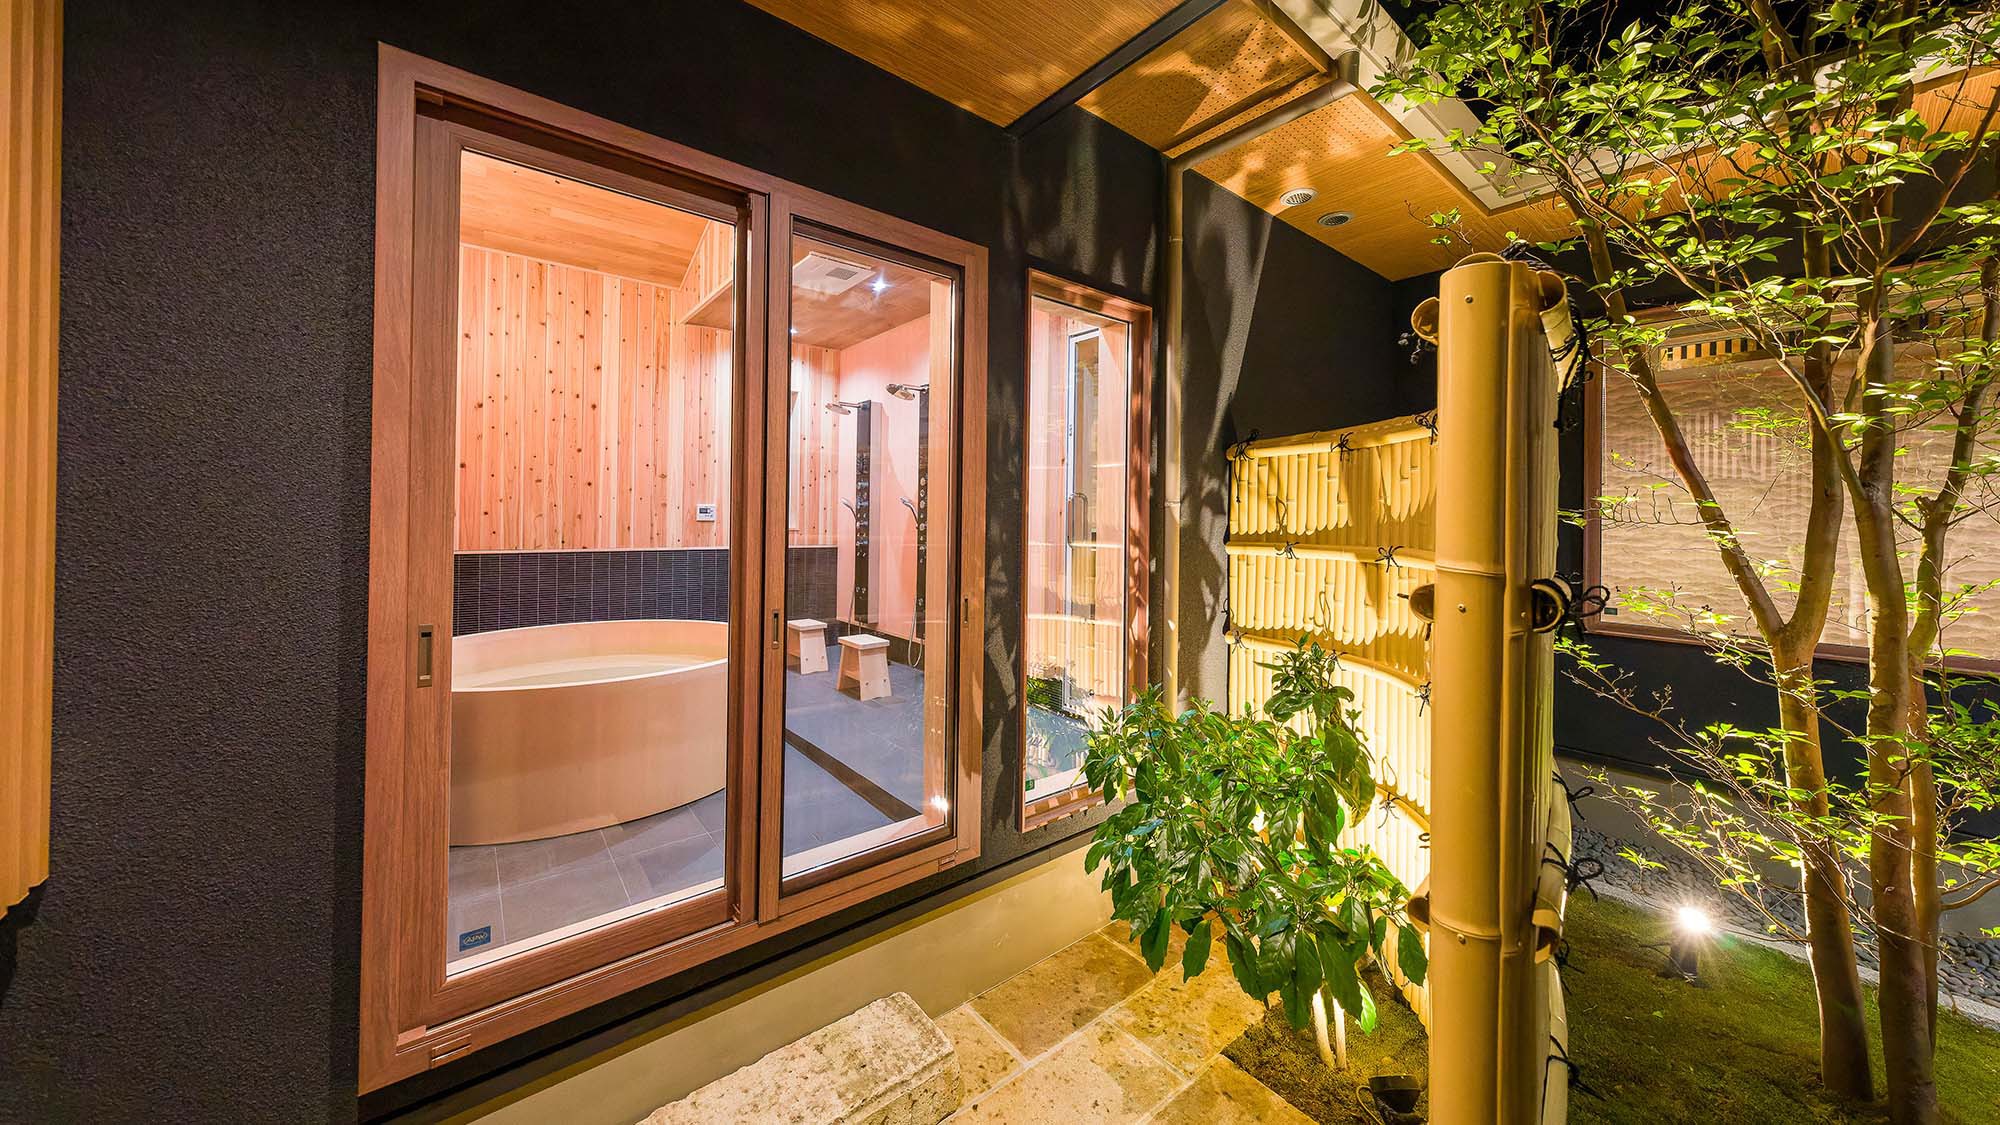 ・【鳳凰館・ヒノキ風呂】ライトアップされた中庭を眺めながら入浴